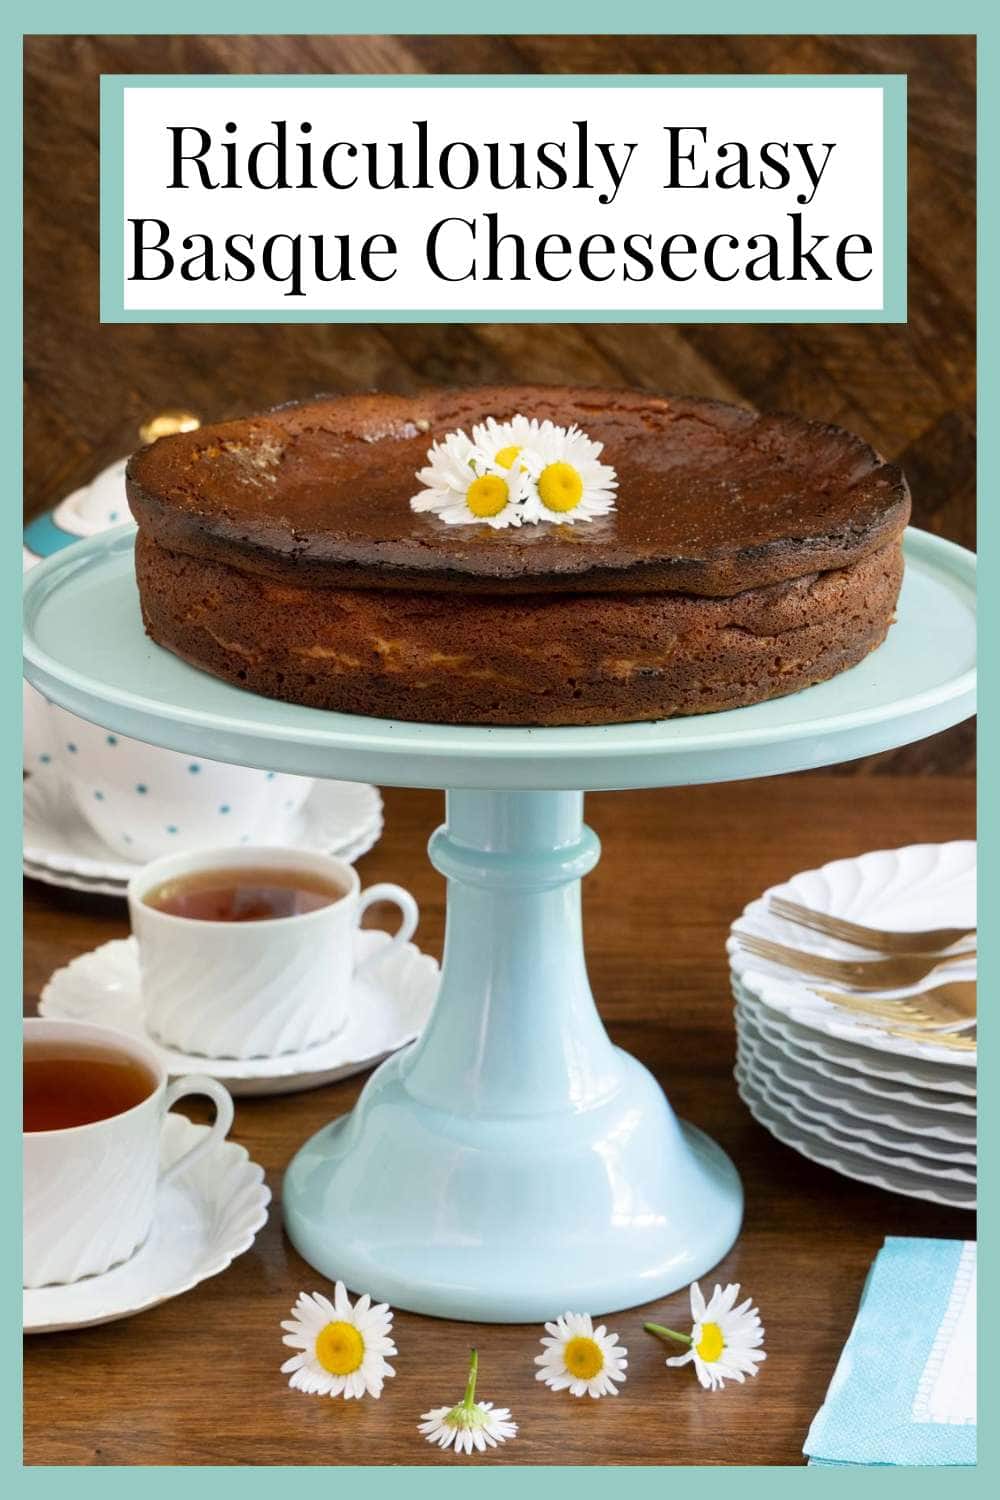 Ridiculously Easy Basque Cheesecake (Tarta de Queso)